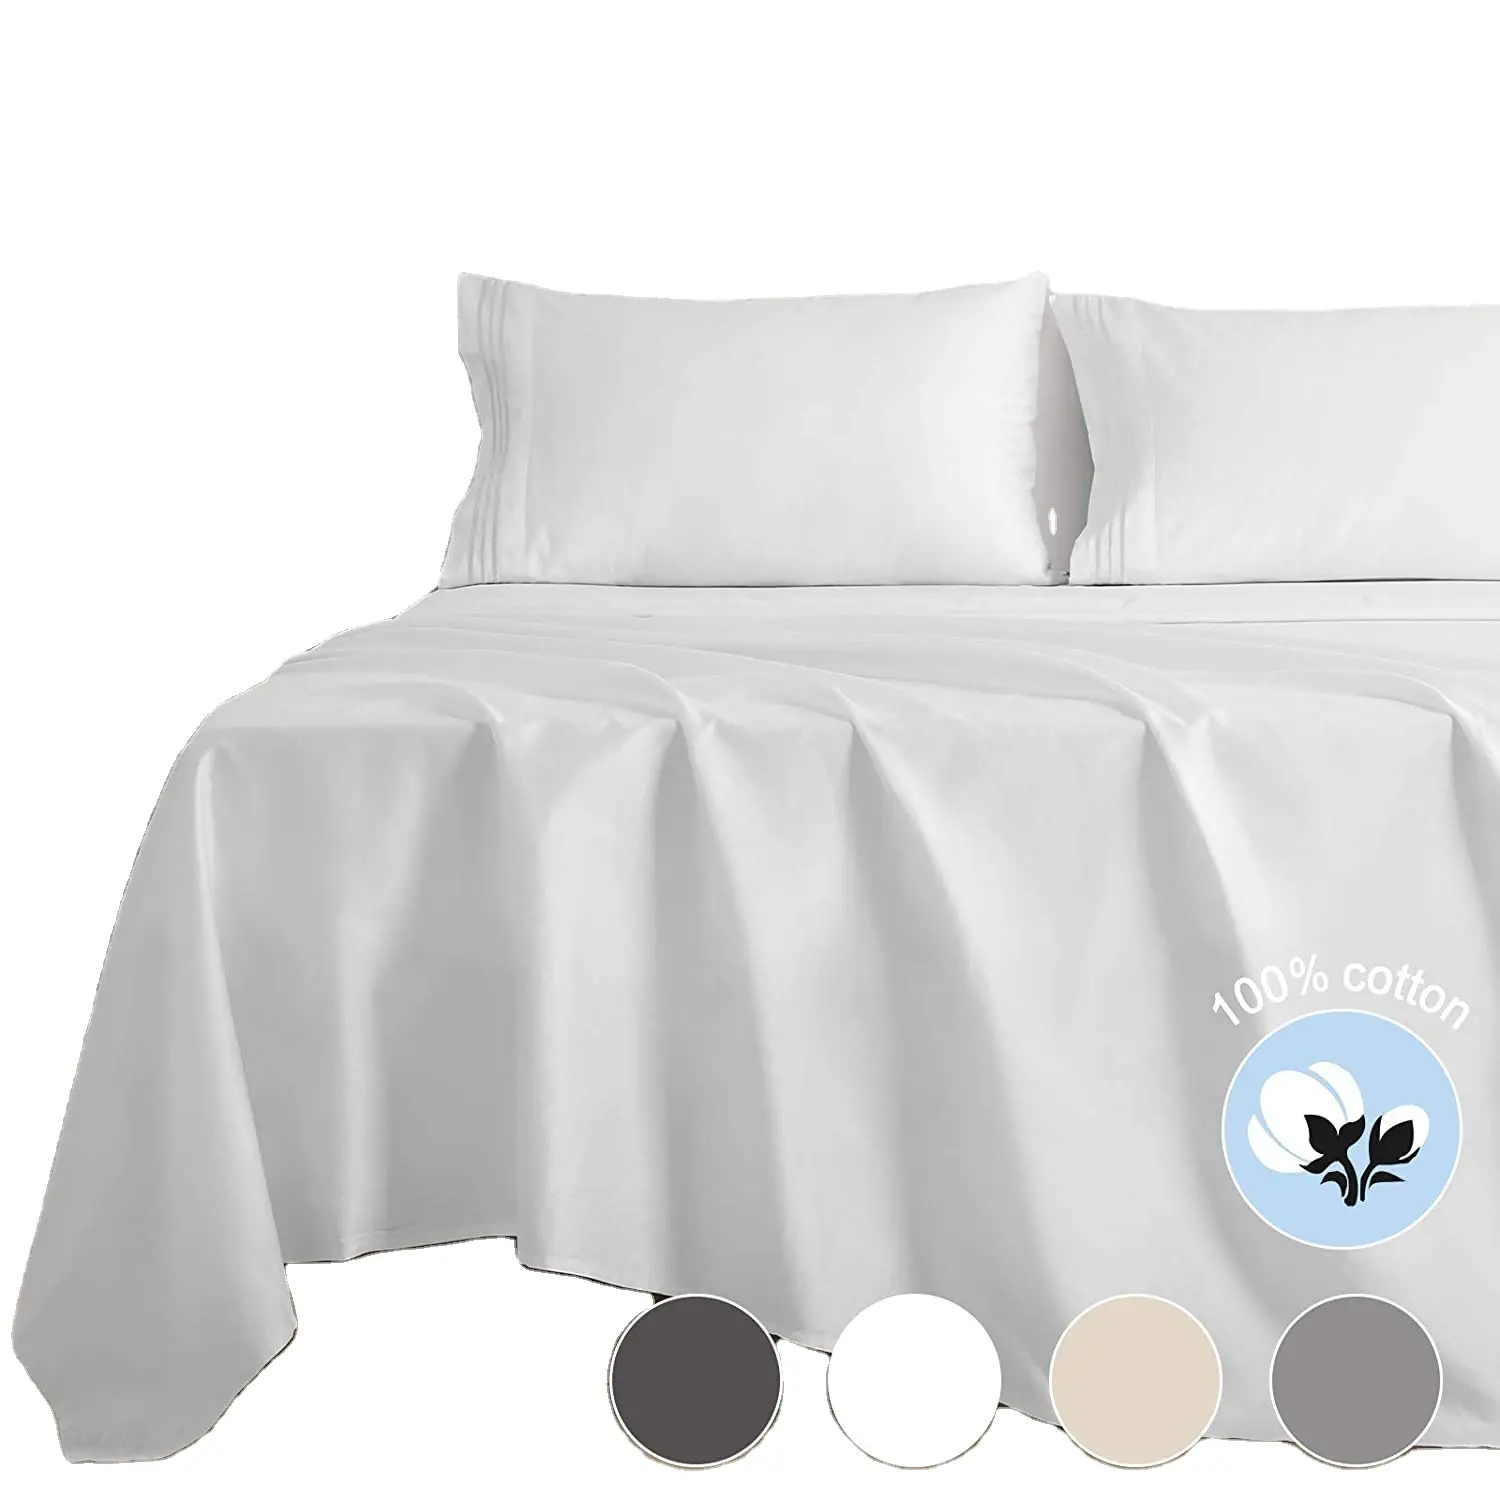 Lençol de cama de algodão egípcio, 100%, tamanho king, 250tc, 300tc, 400tc5, estrela, hotel, cetim branco, luxo, folha de cama da china, drap de lit